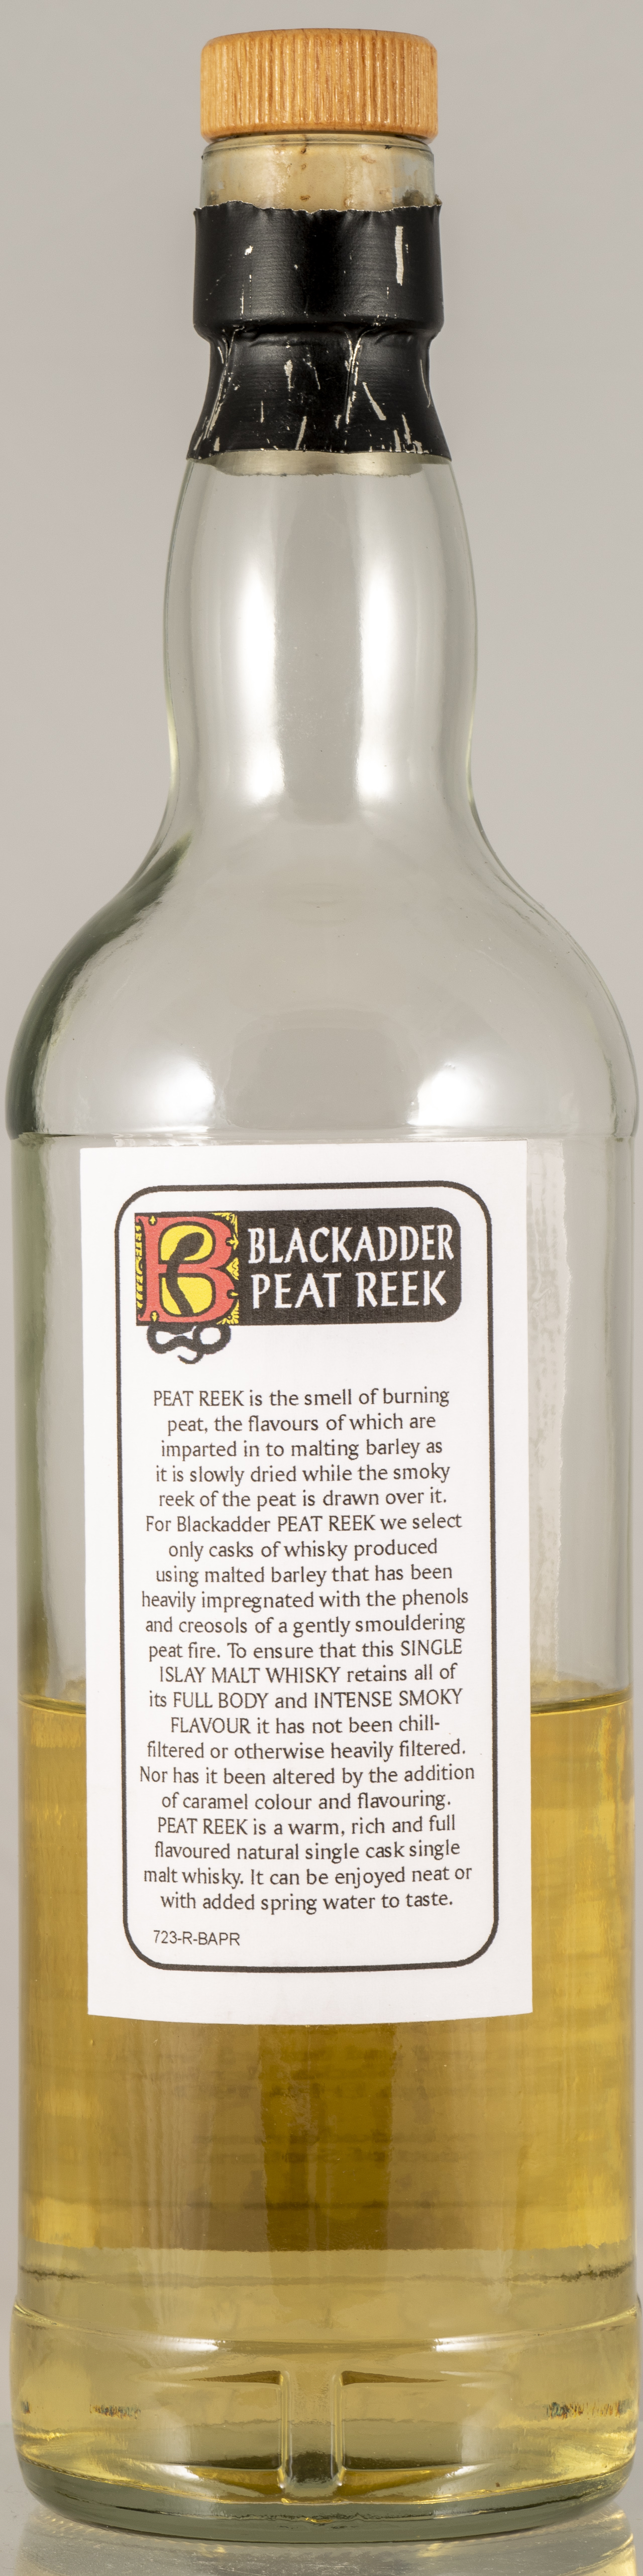 Billede: PHC_7085 - Blackadder Peat Reak - bottle back.jpg